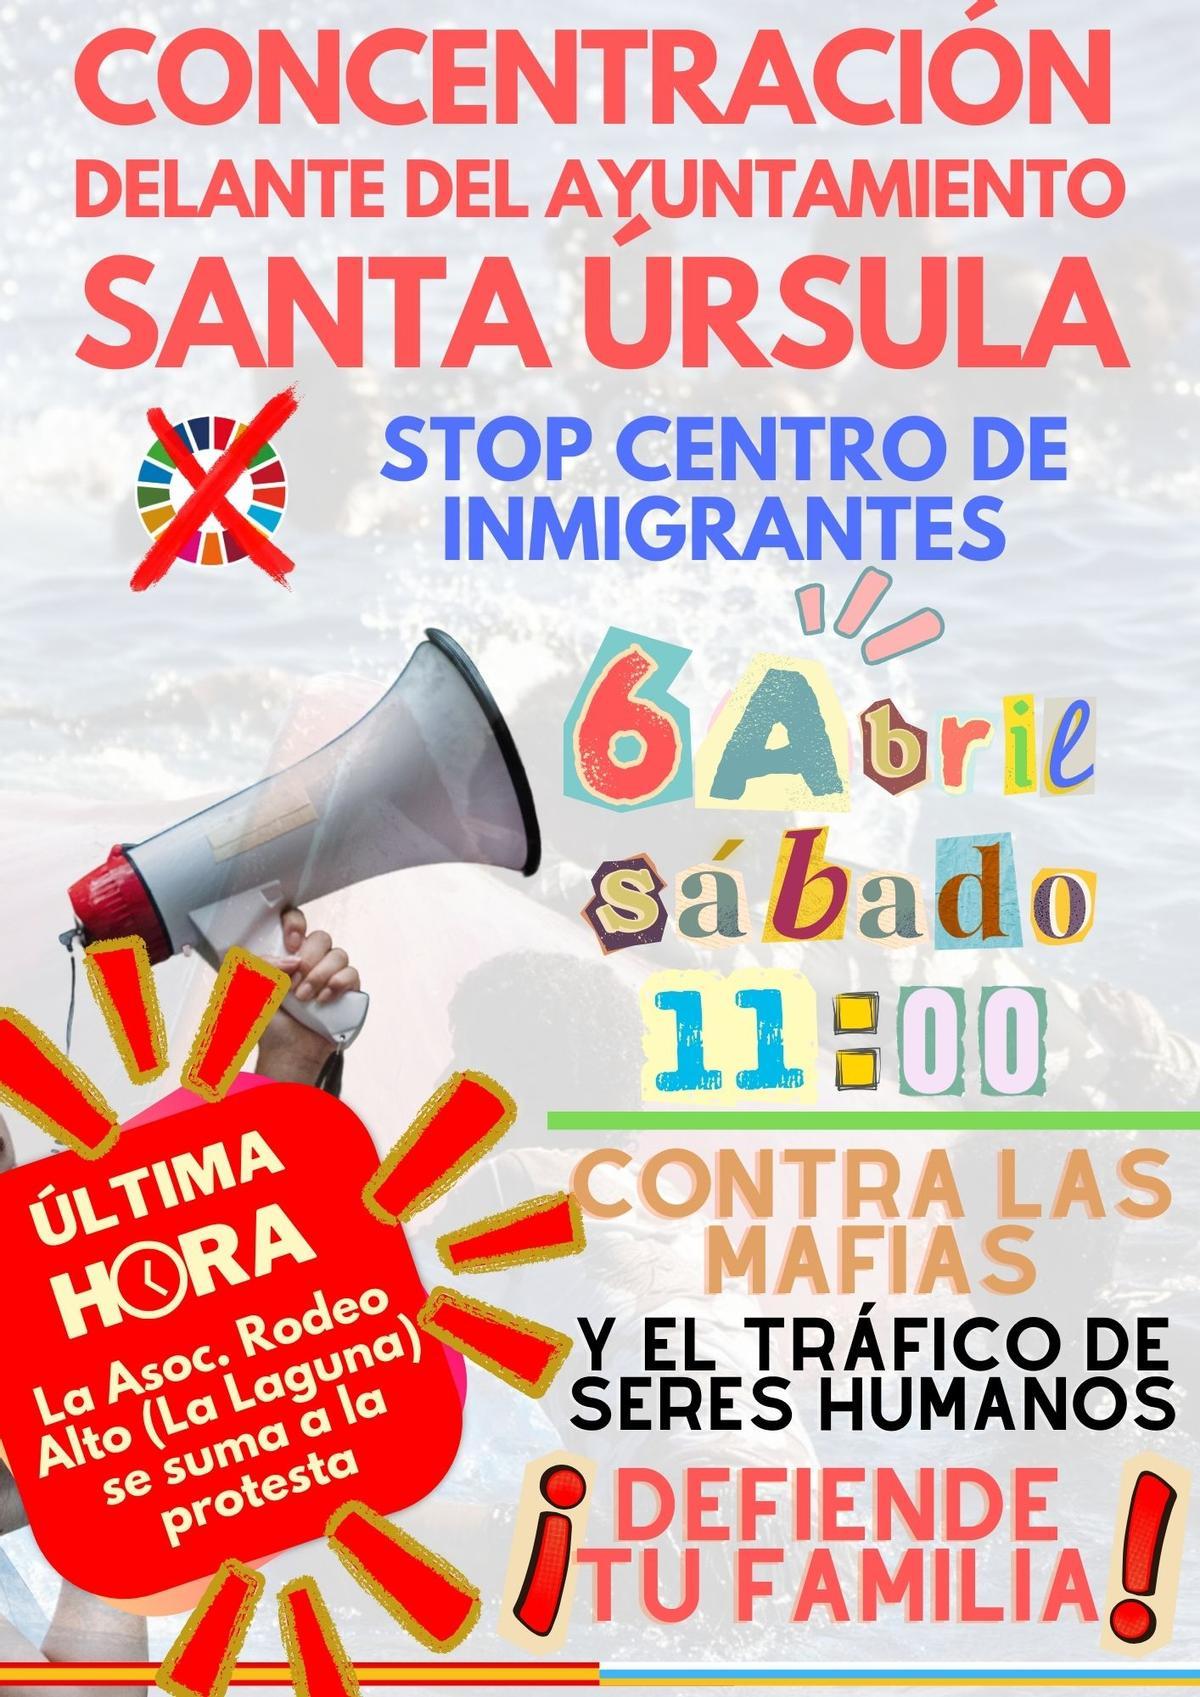 Cartel de la concentración xenófoba convocada para este sábado en Santa Úrsula.